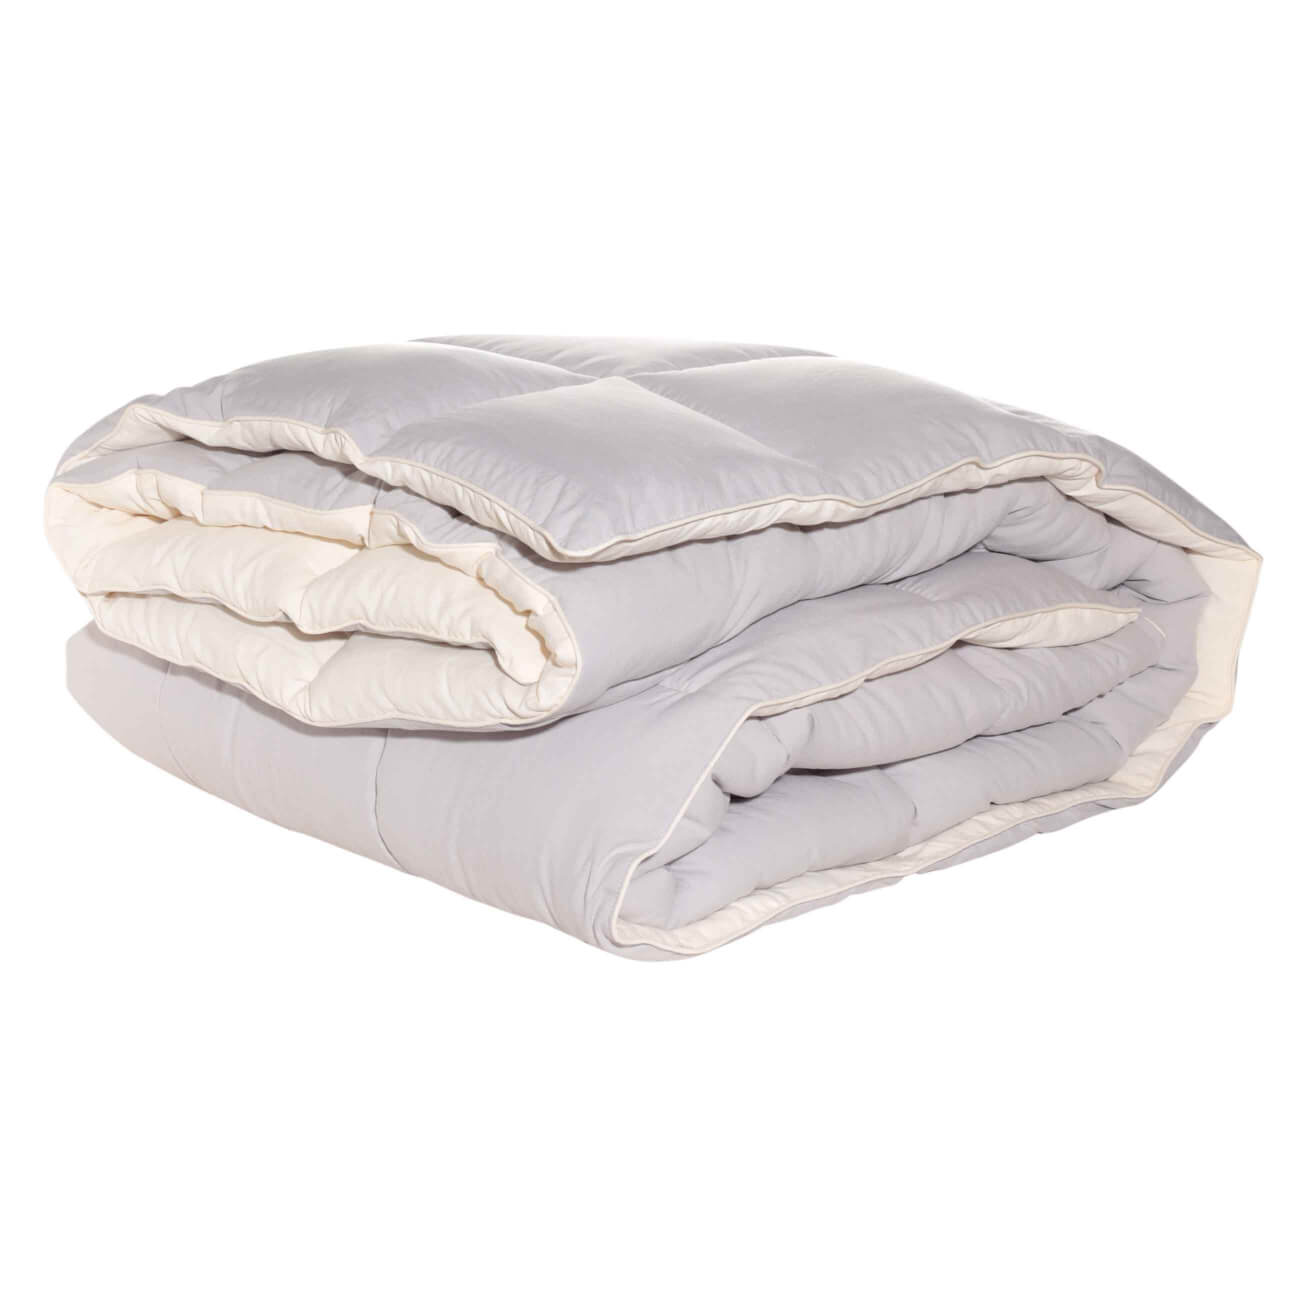 Одеяло, 200х220 см, микрофибра/холлофайбер, бежевое/молочное, Hollow fiber изображение № 1